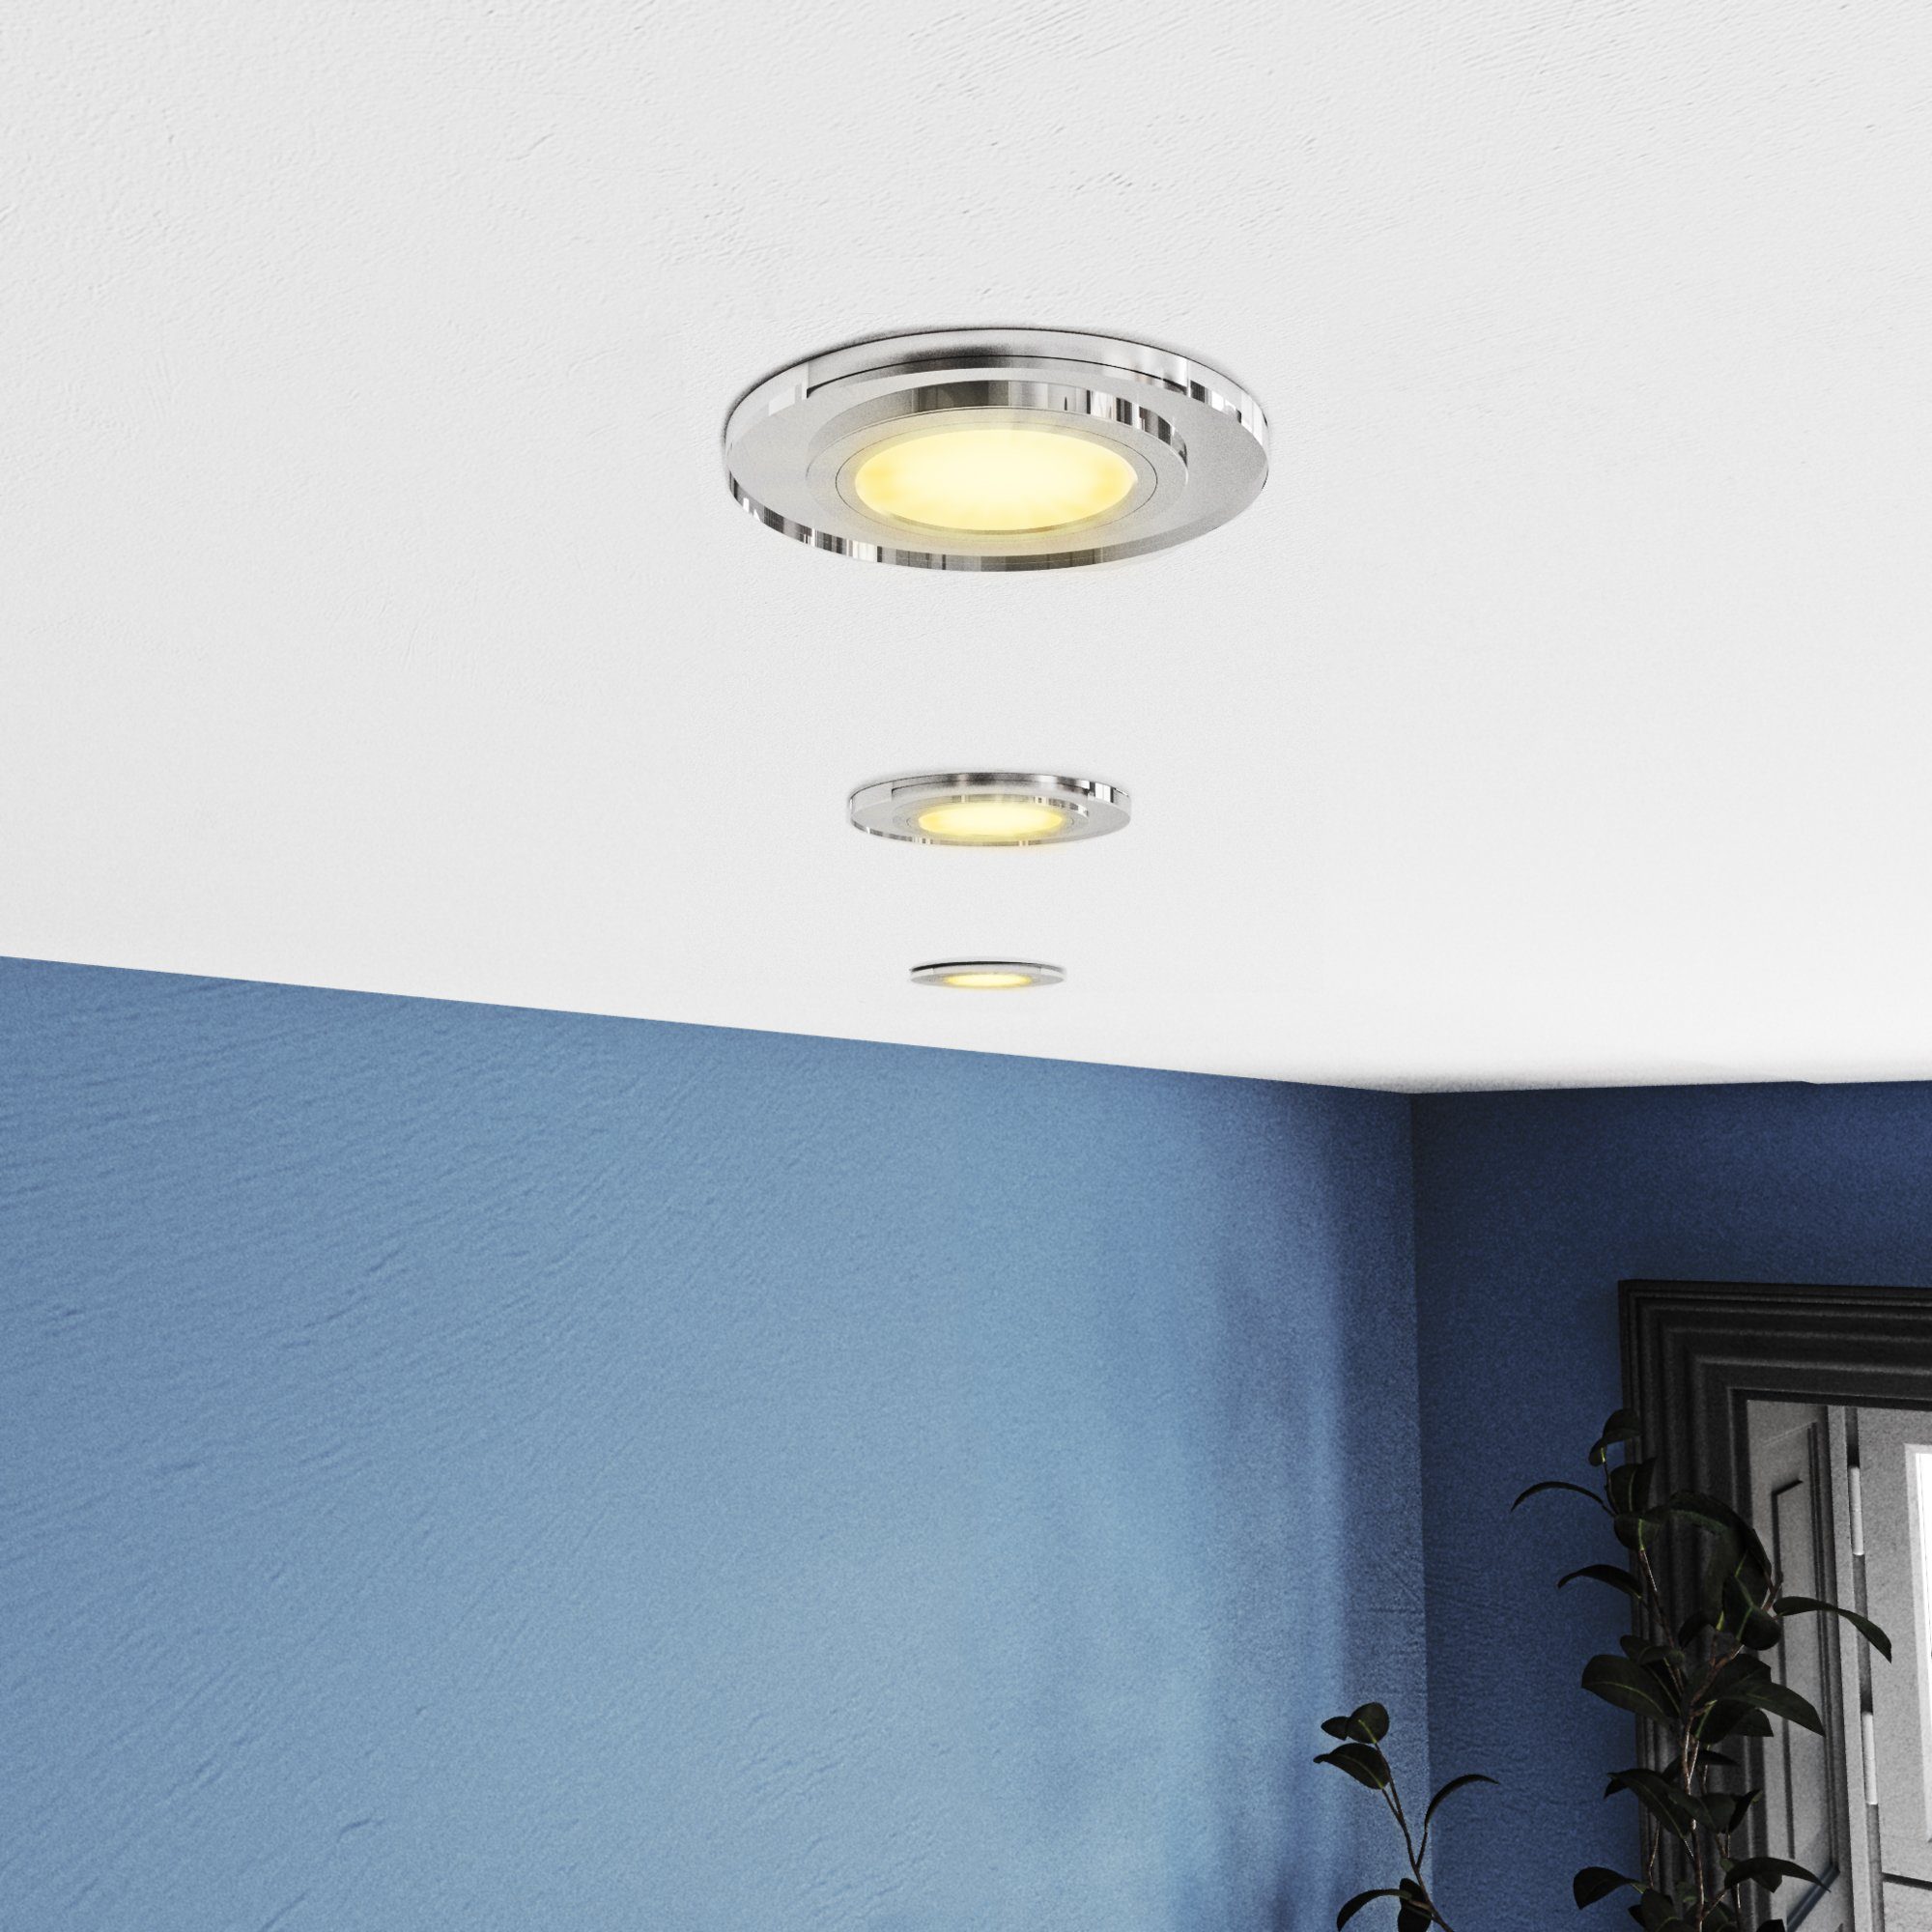 SSC-LUXon LED Einbaustrahler Design klar Glas LED Einbauleuchte in rund GU10 Warmweiß Lampe, mit LED